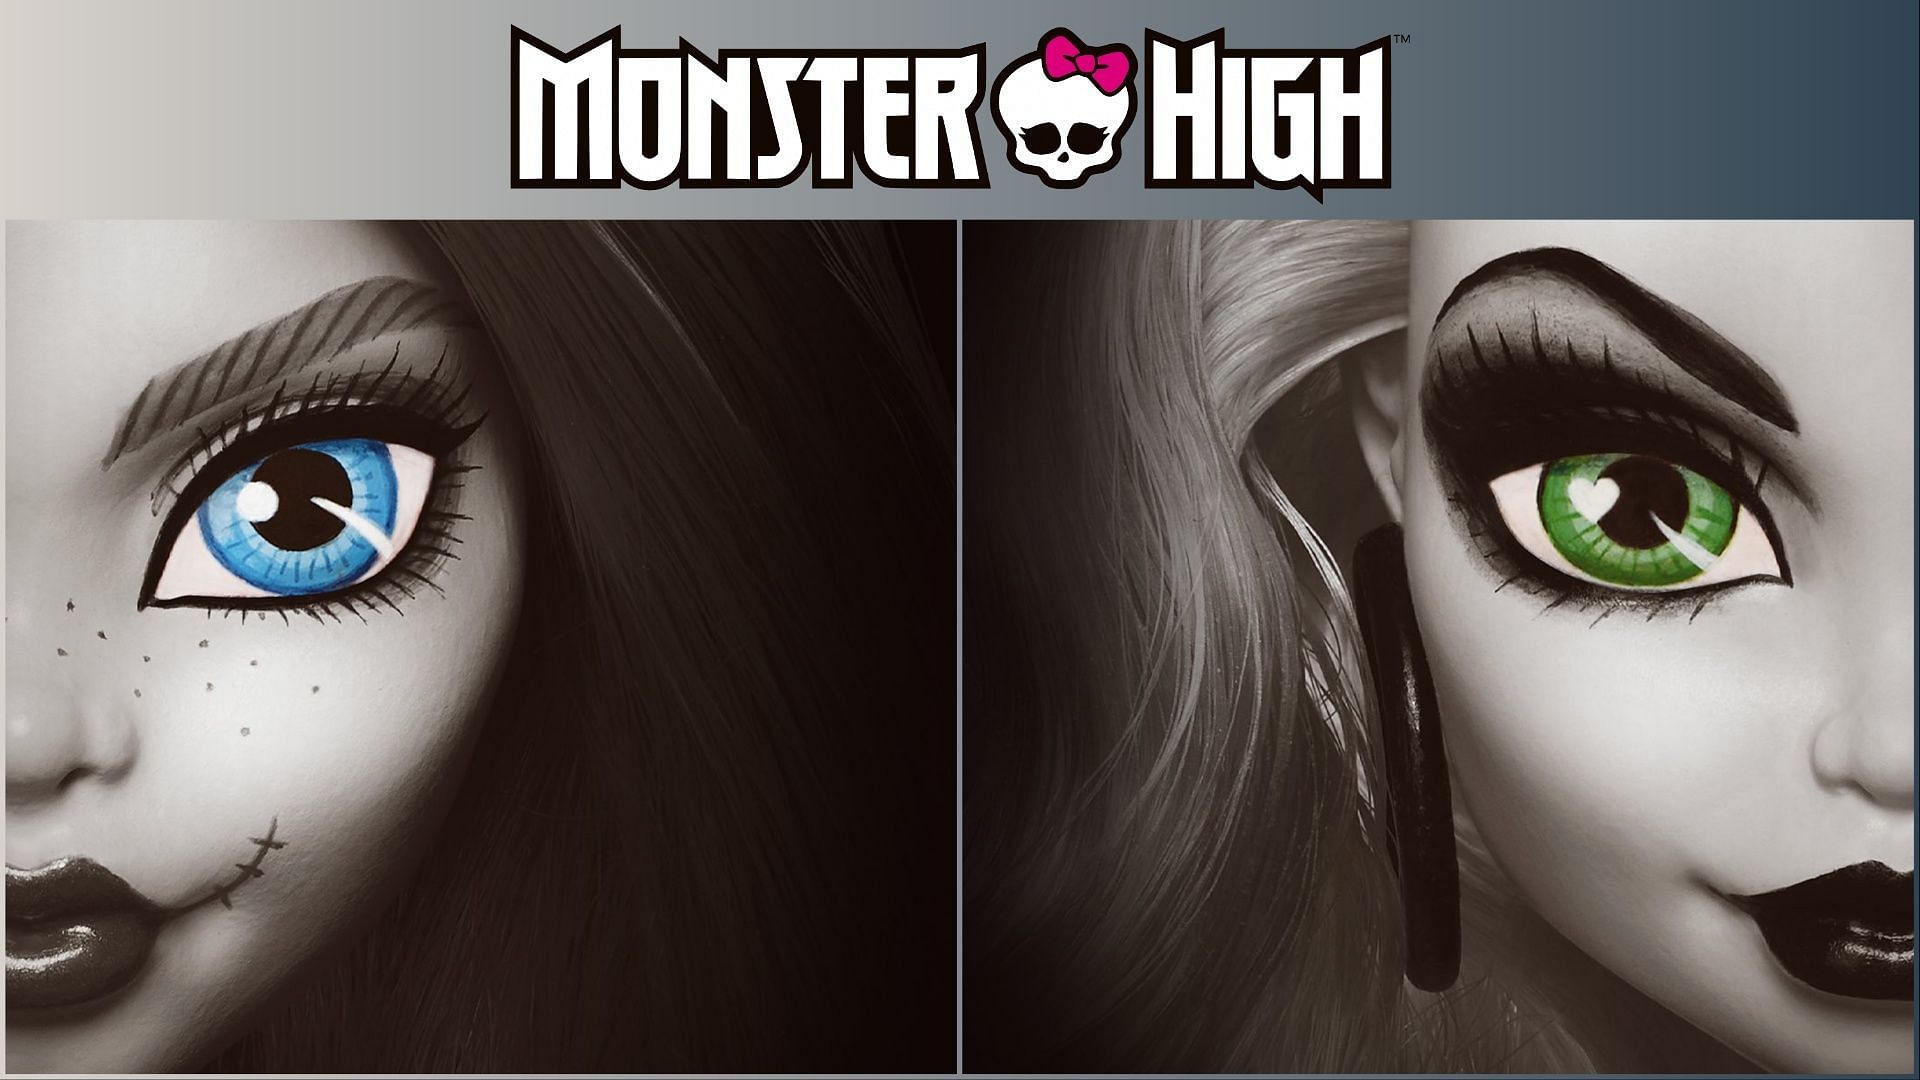 Mattel teases new Chucky and Tifanny Monster High dolls (Image via Mattel/Monster High)